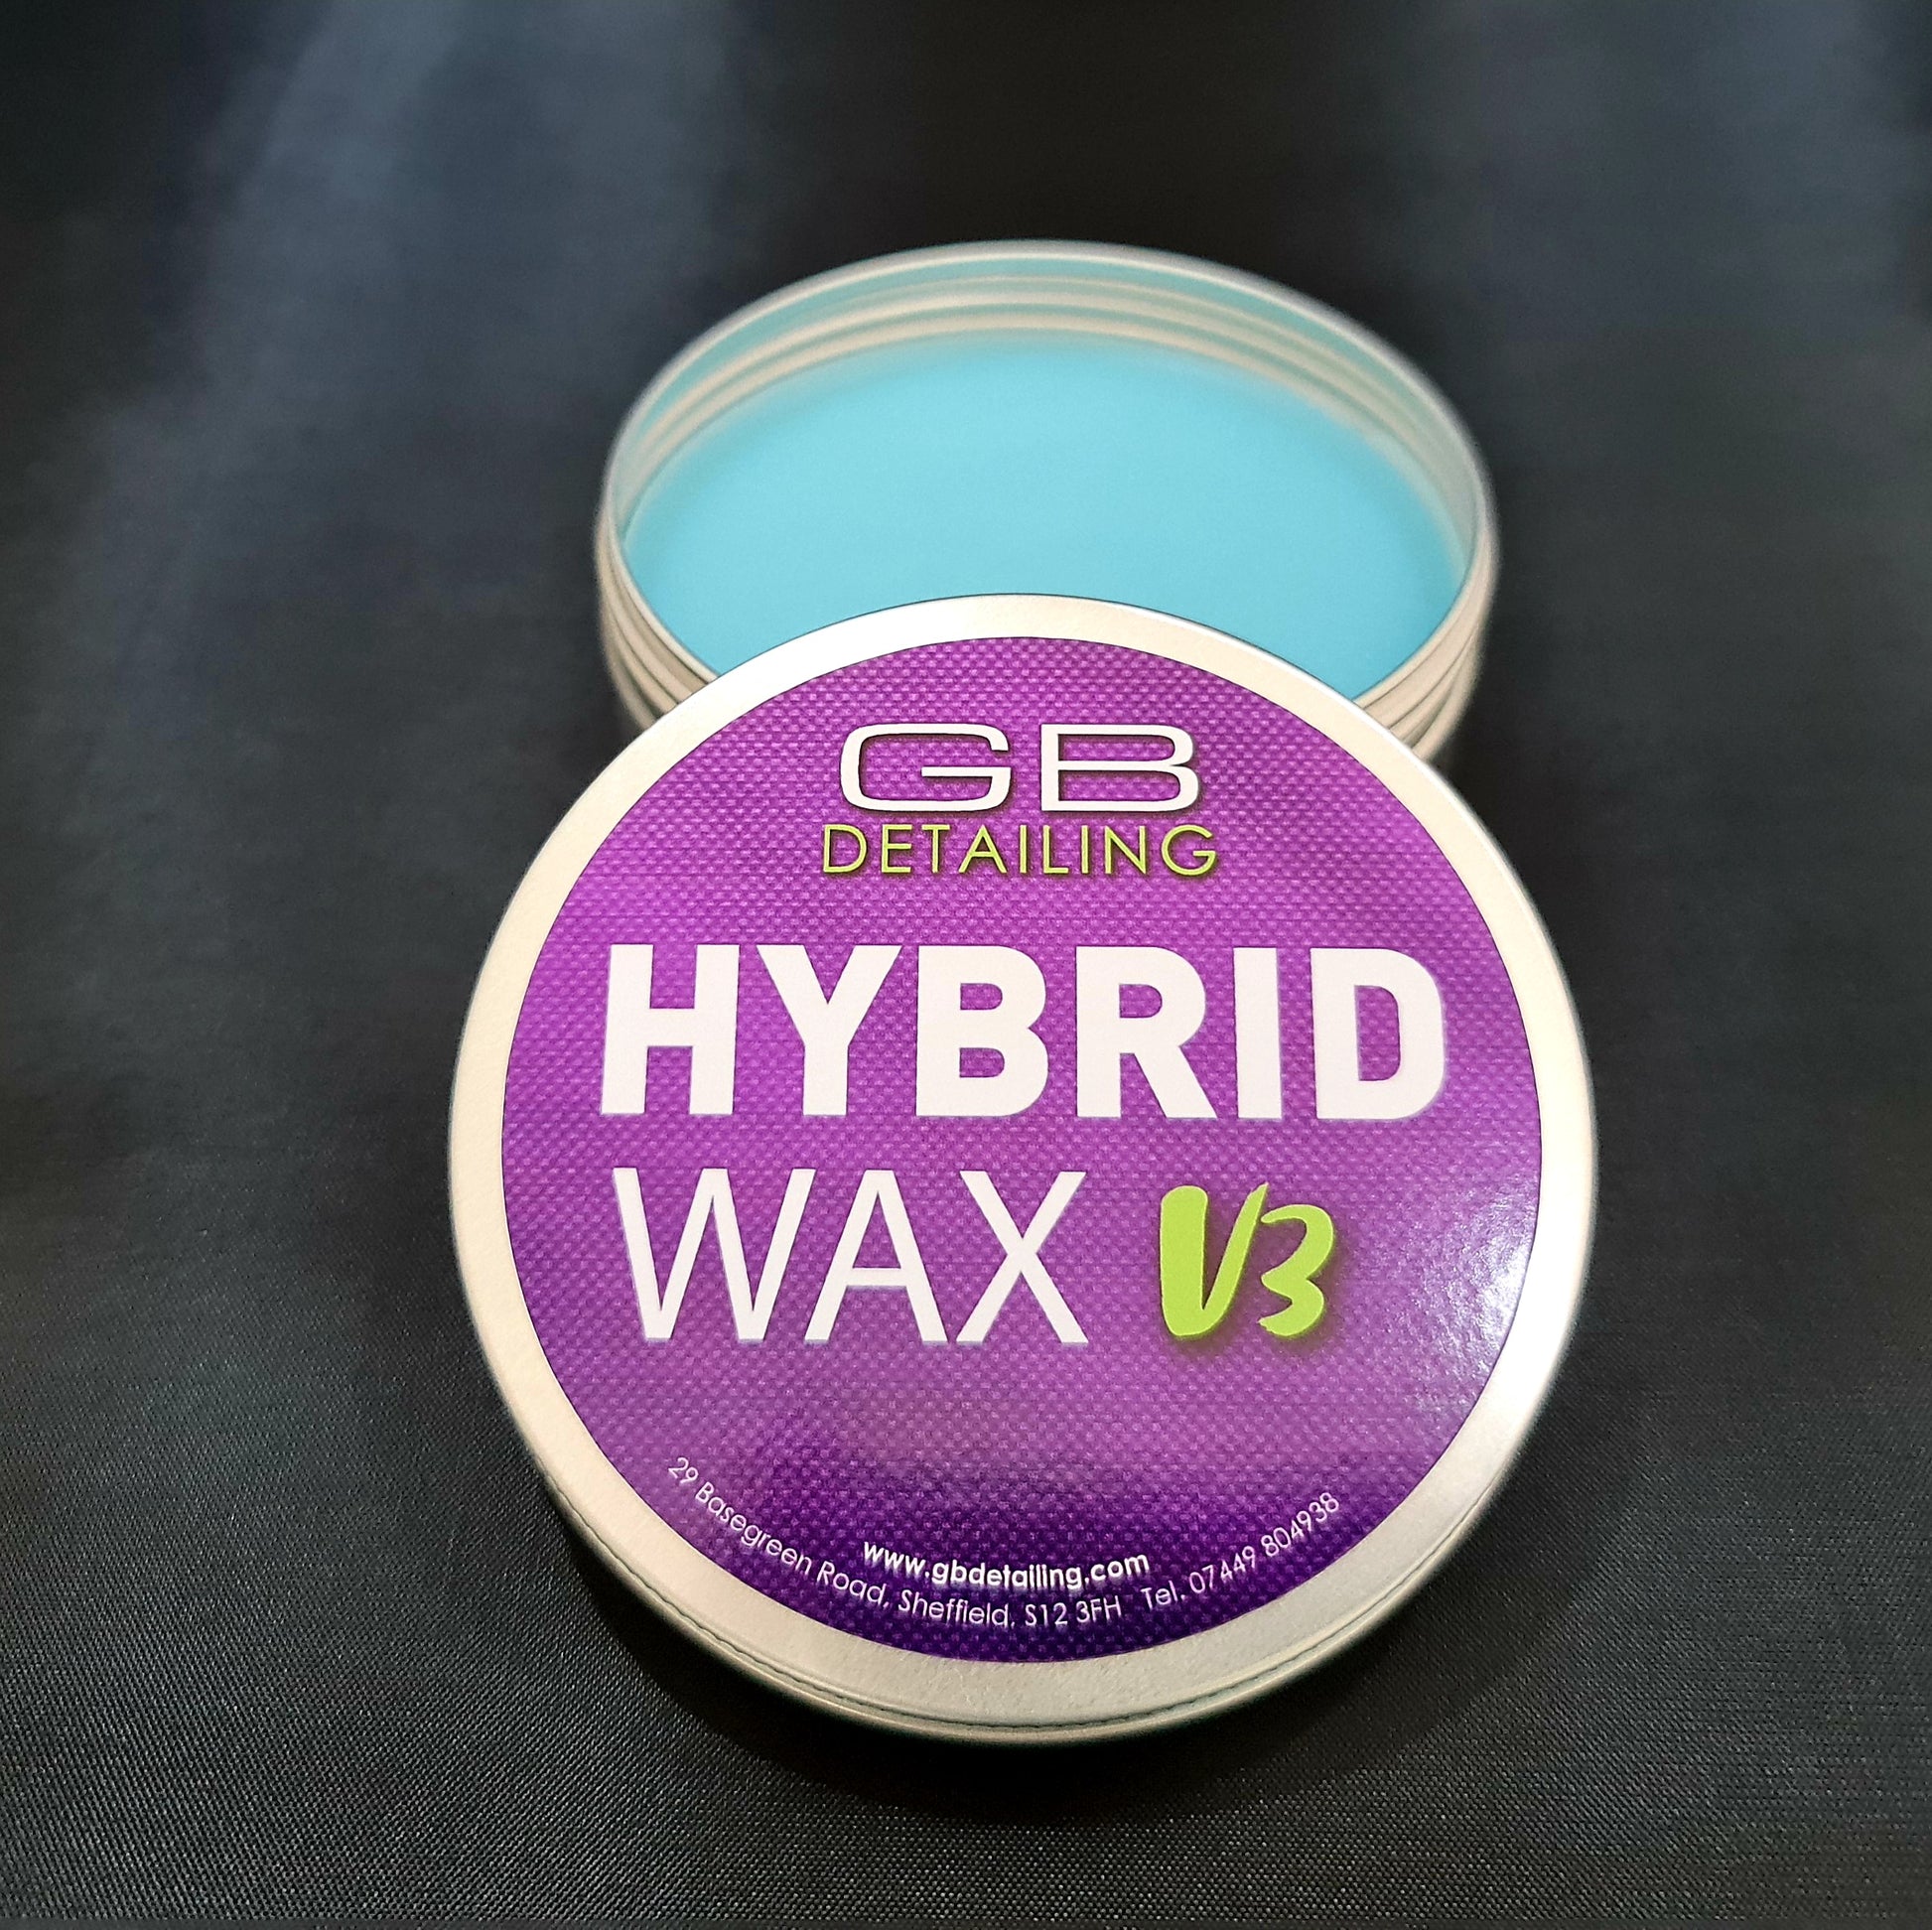 GB Detailing hybrid wax v3 paste wax 